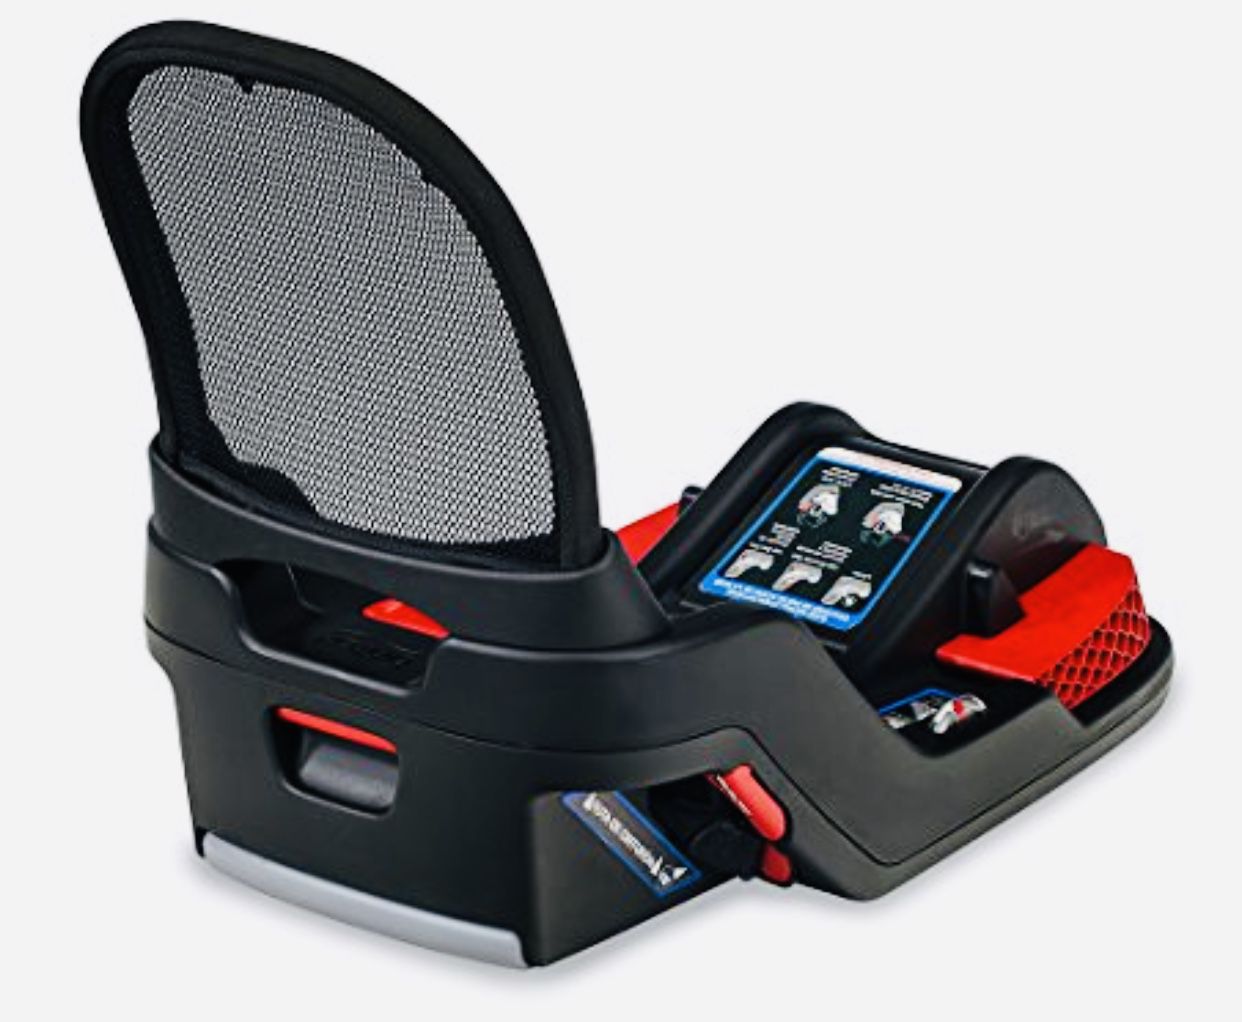 Britax Endeavor car seat base